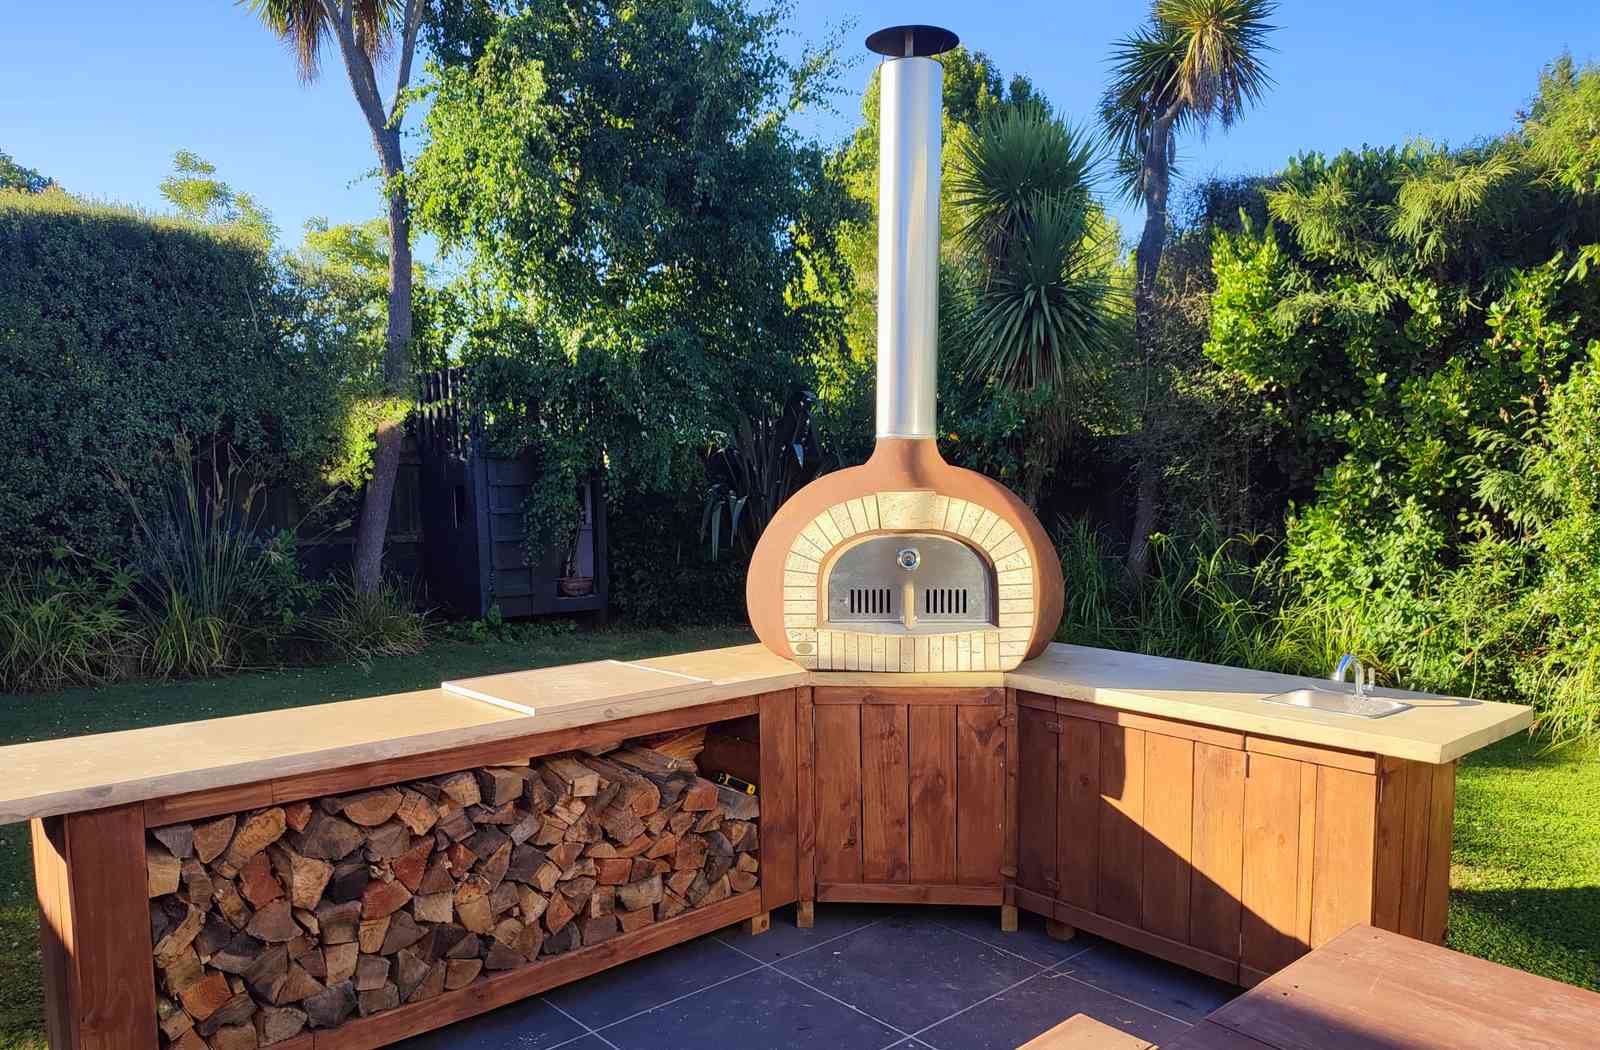 Kiwi Pizza Oven Wood Fired Oven - Backyard